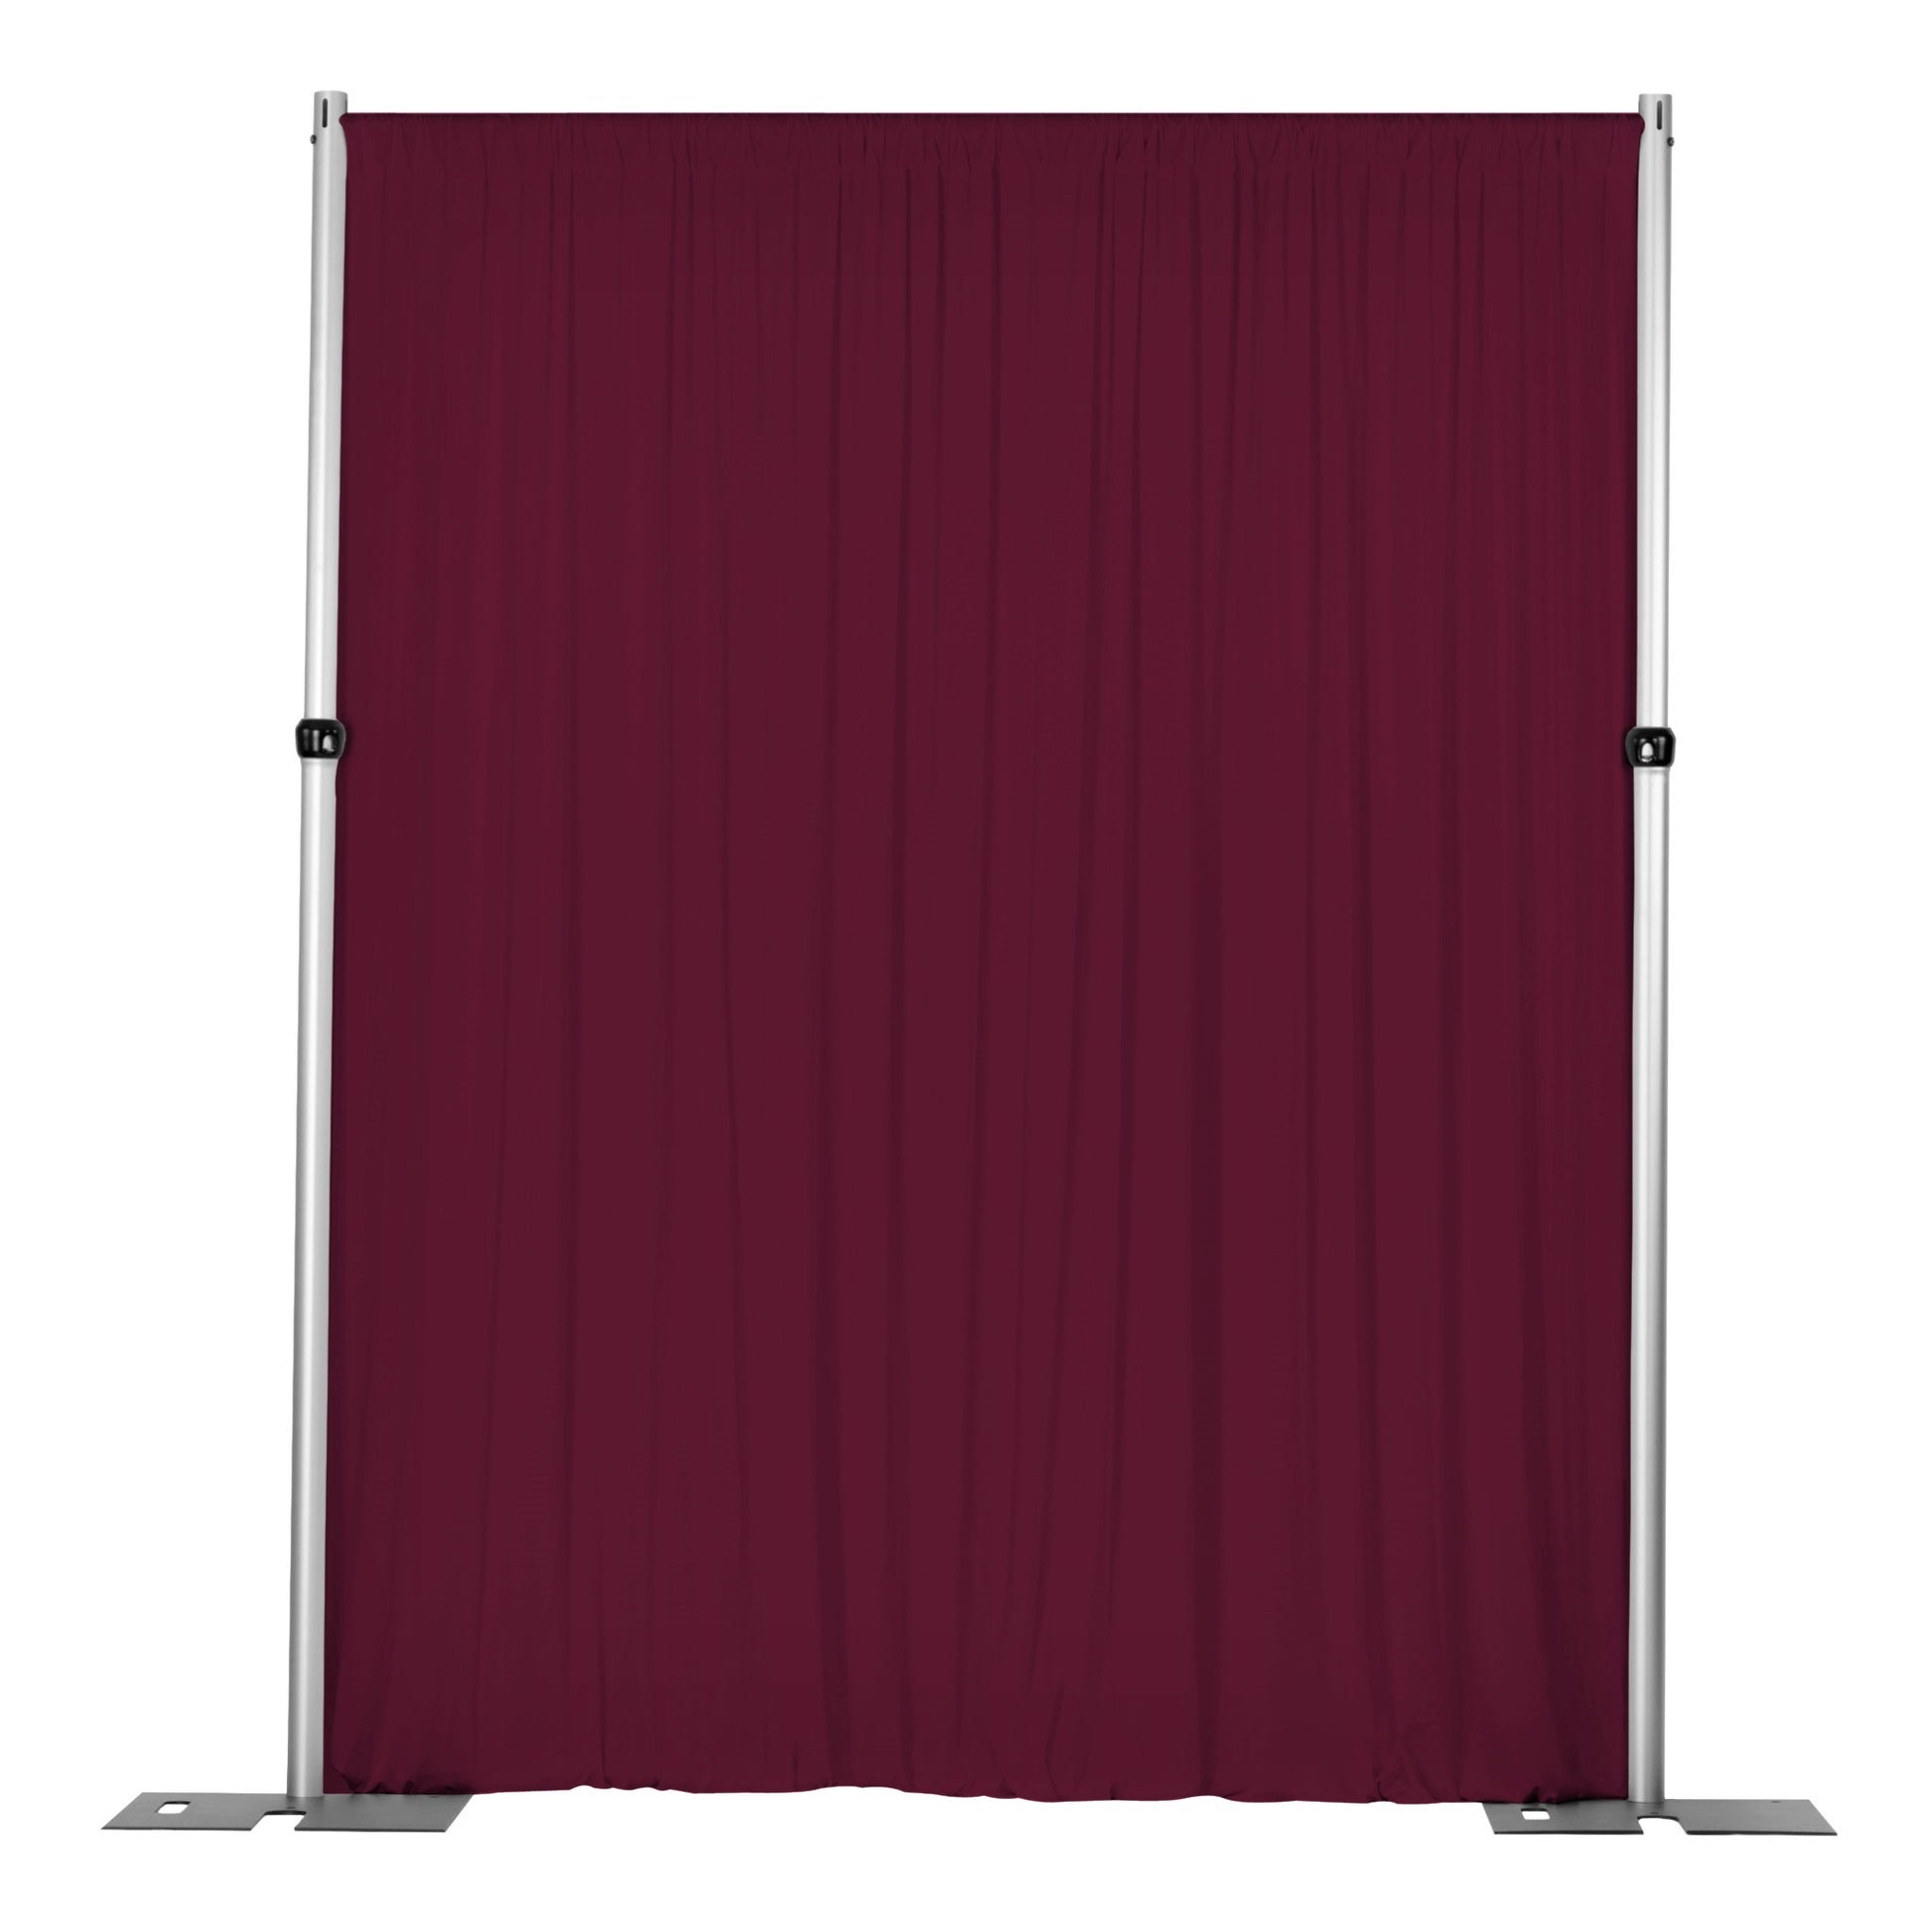 Spandex 4-way Stretch Drape Curtain 12ft H x 60" W - Burgundy